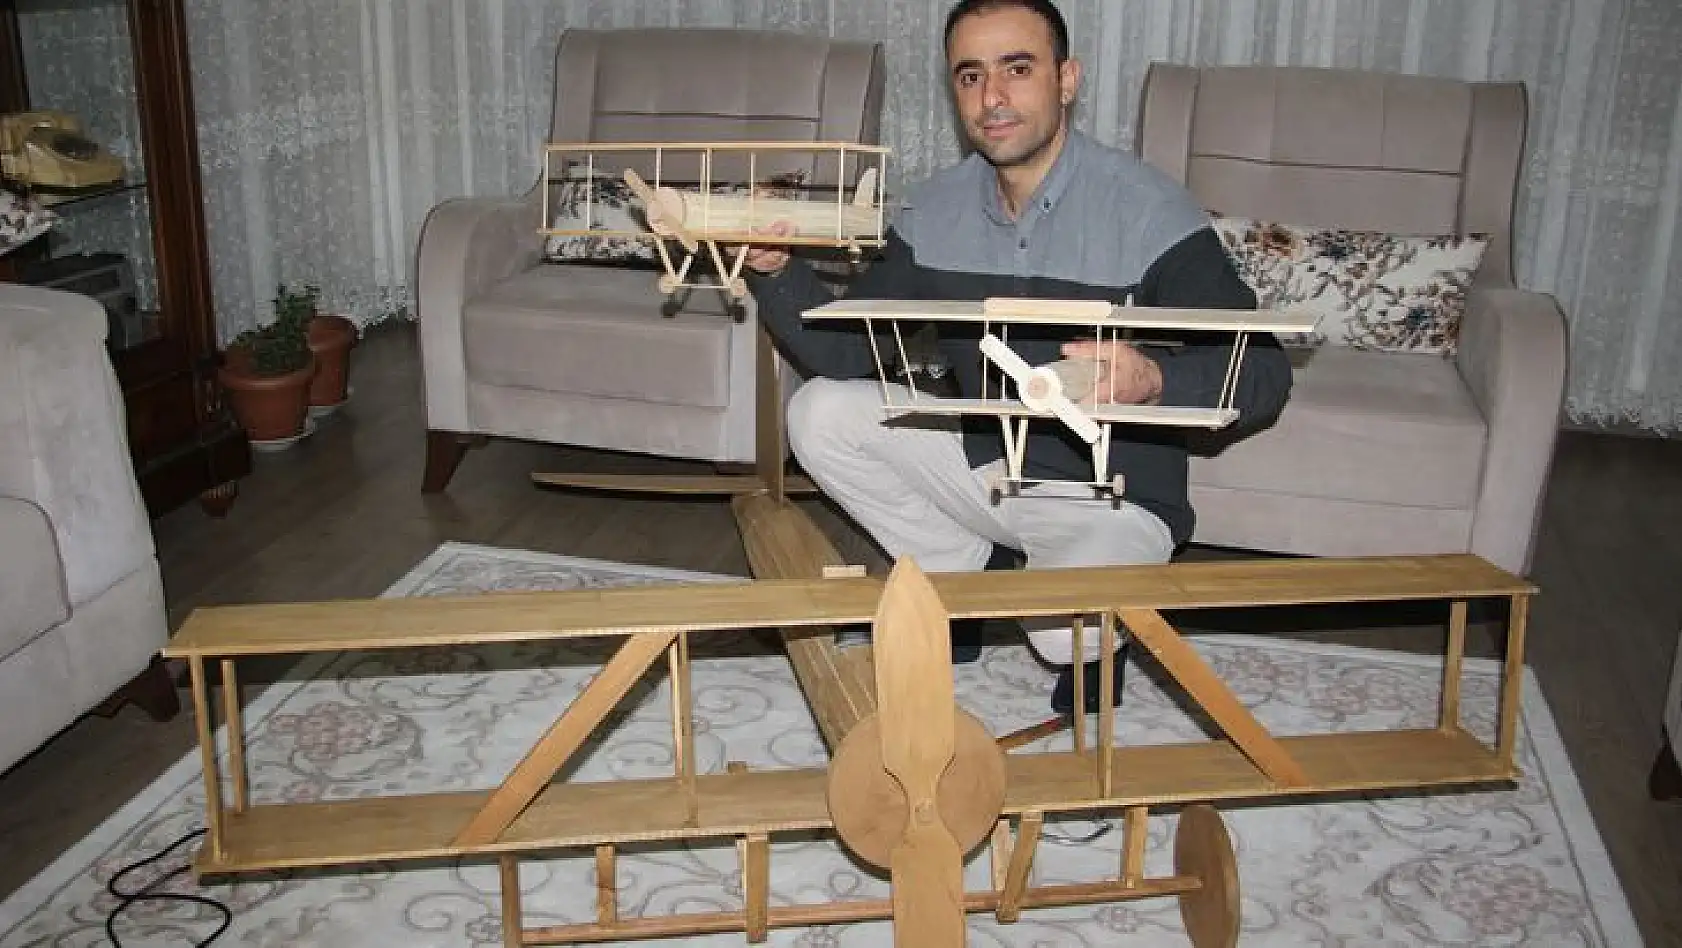 Hayali İçin Evini Atölyeye Çevirdi, Maket Uçak Yapmaya Başladı